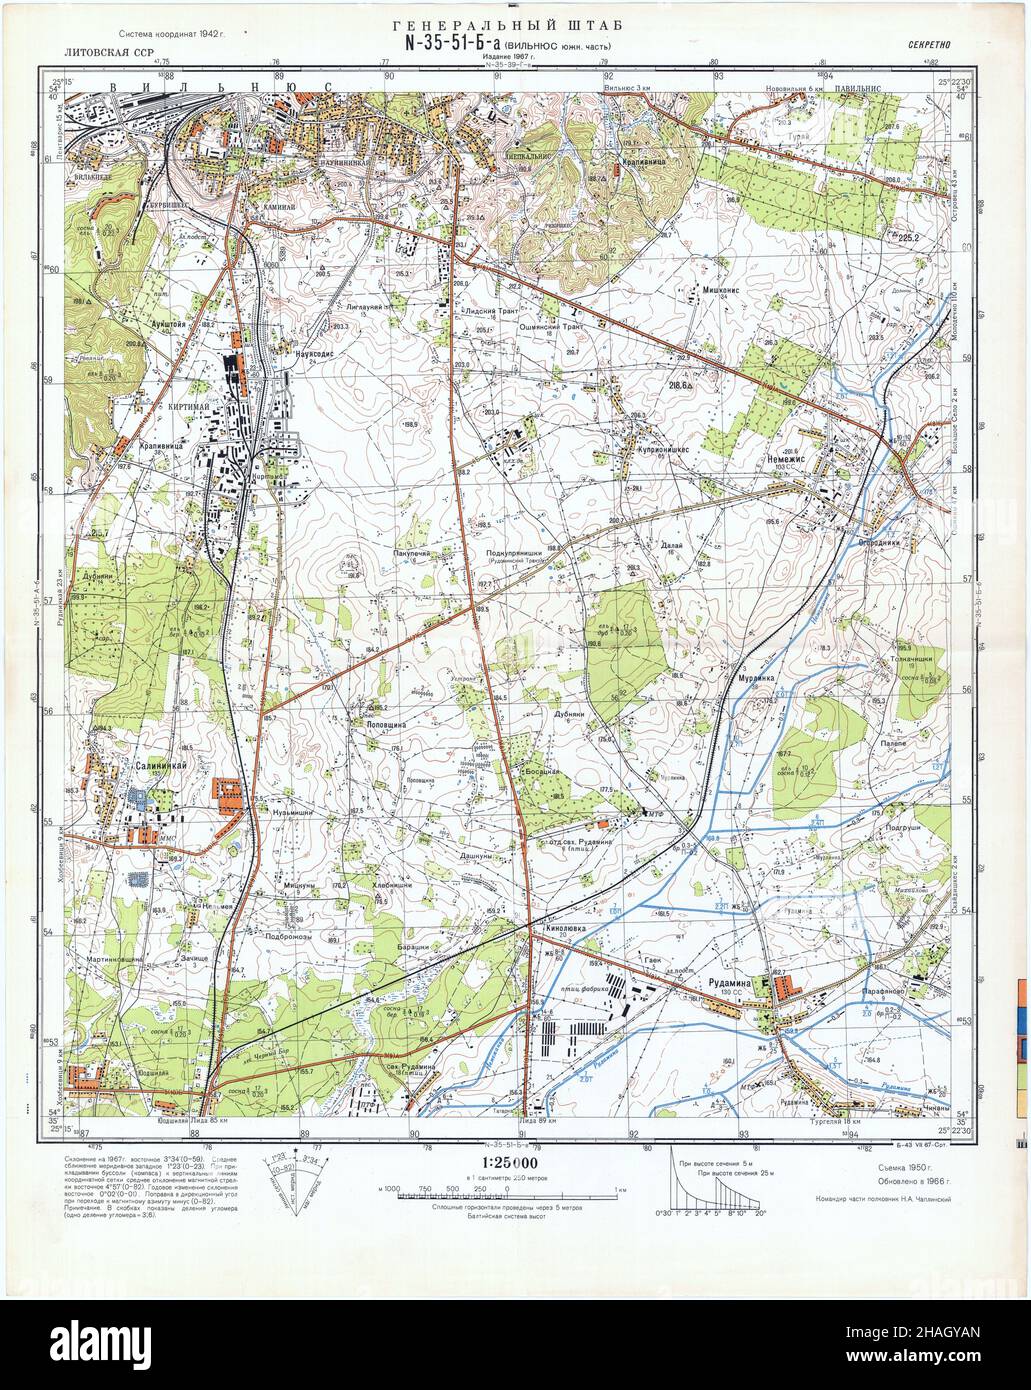 Wilno Map, Vilnius Map, Wilna Map, Old Wilno Map, Retro Vilnius Map, Vintage Vilnius City, Old Wilno, Retro Vilnius Poster, Lithuania Map, Wilno Print Stock Photo